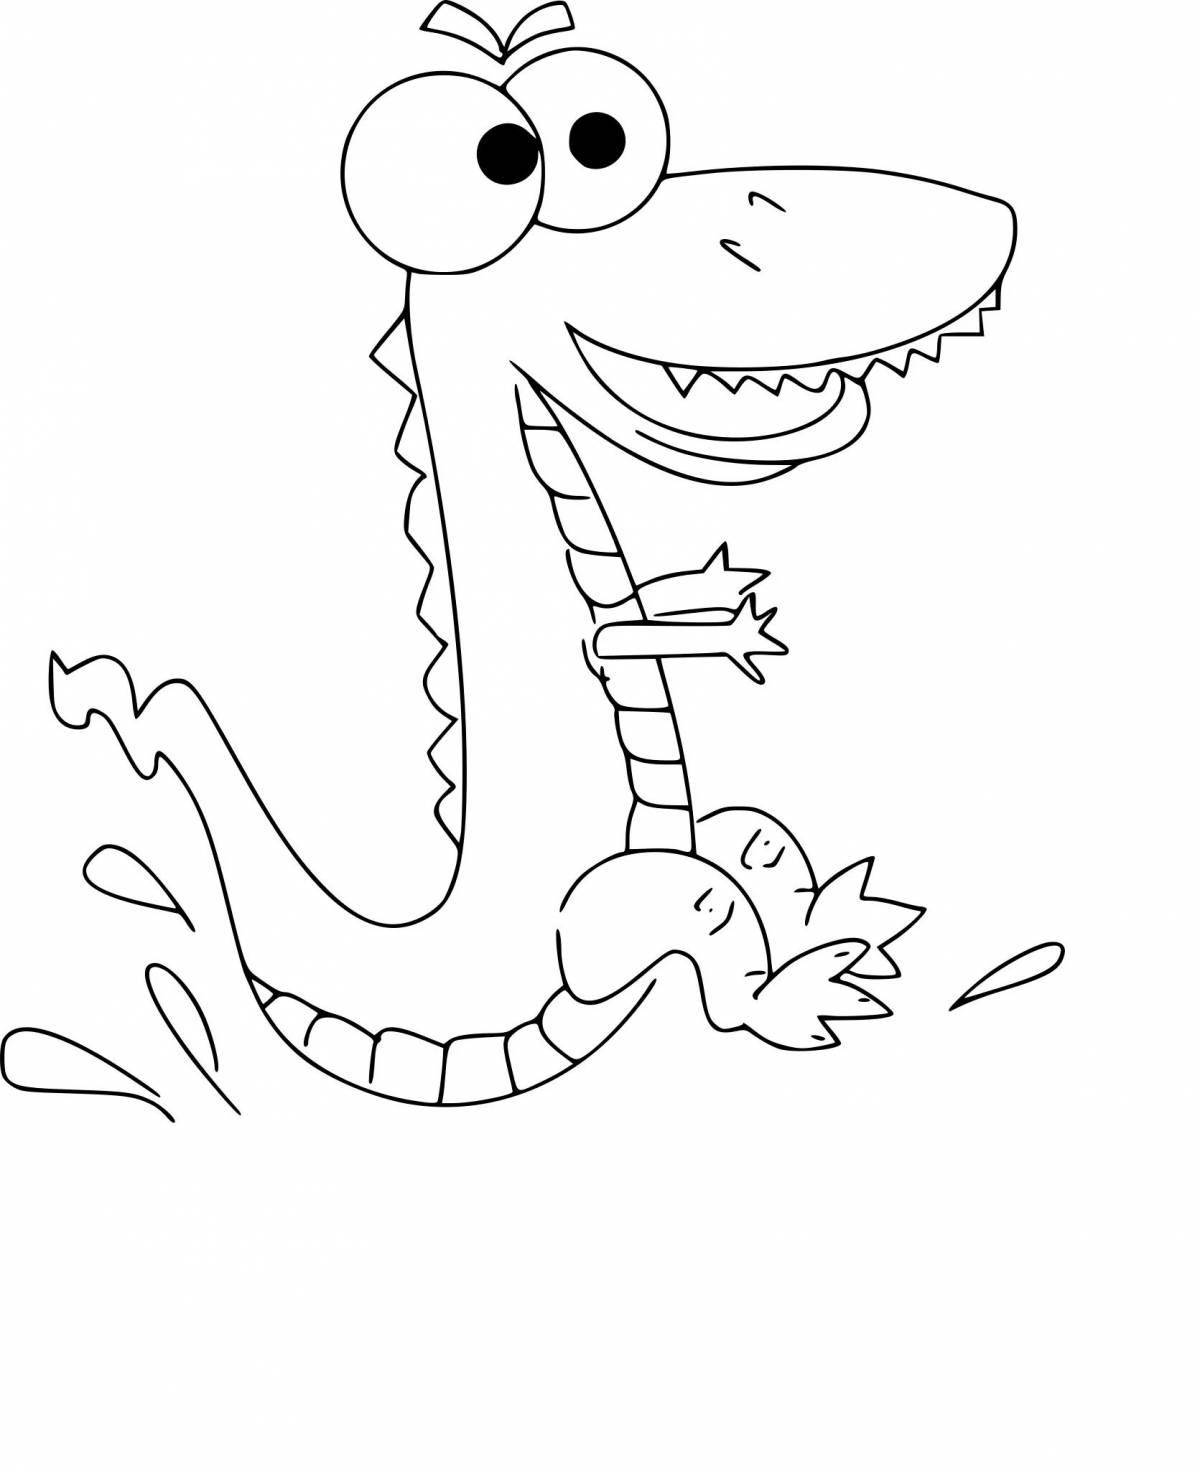 Забавная раскраска крокодил для детей 3-4 лет